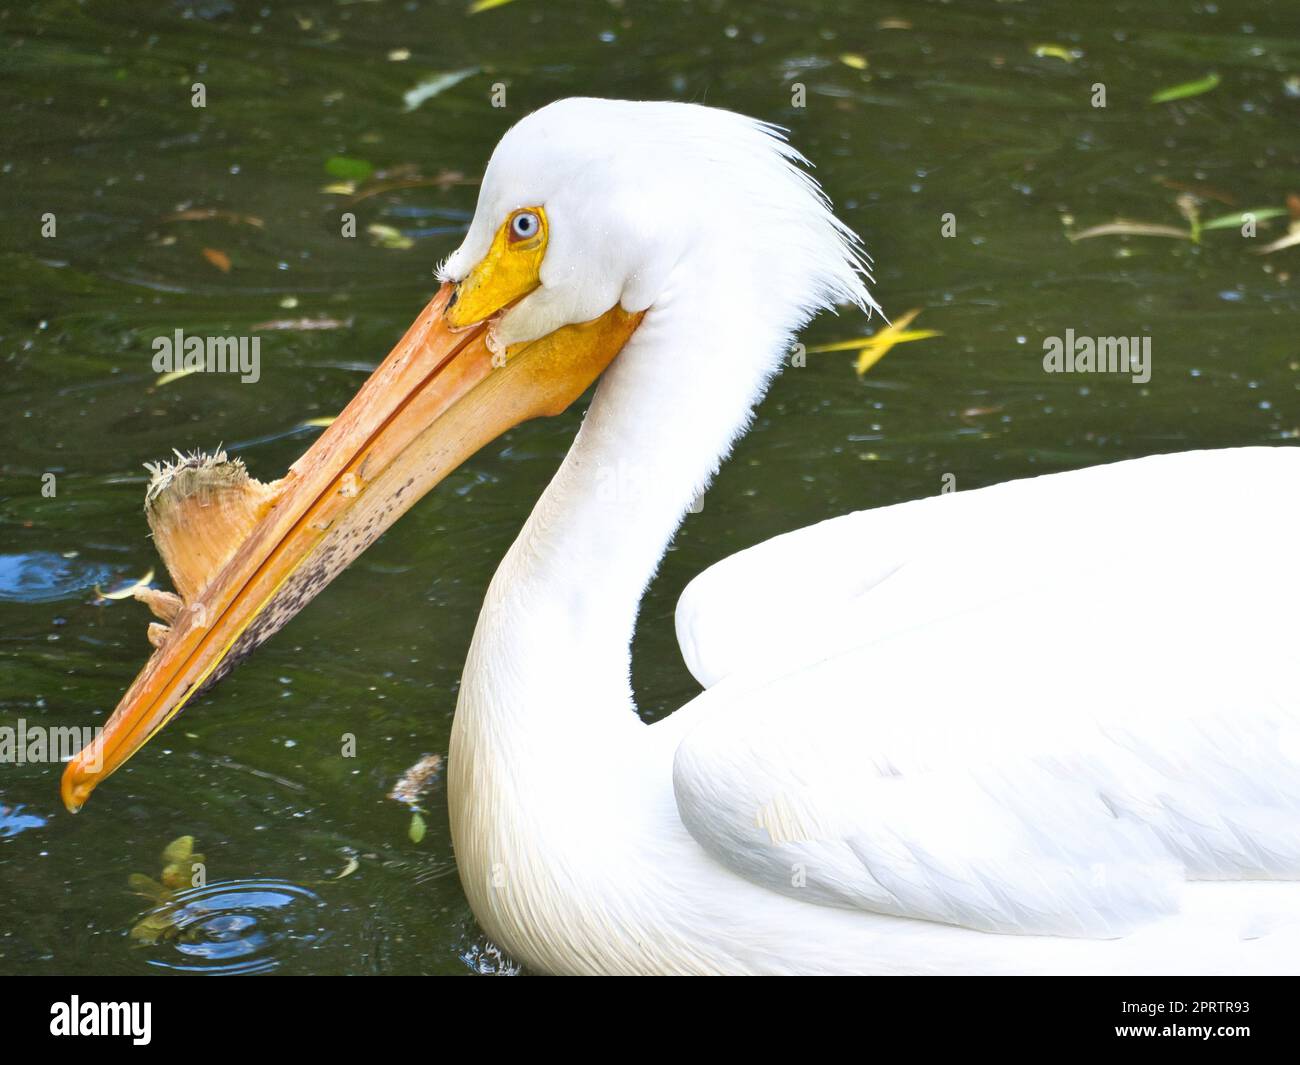 Pelikane schwimmen im Wasser. Weißes Gefieder, großer Schnabel, in einem großen Seevogel Stockfoto